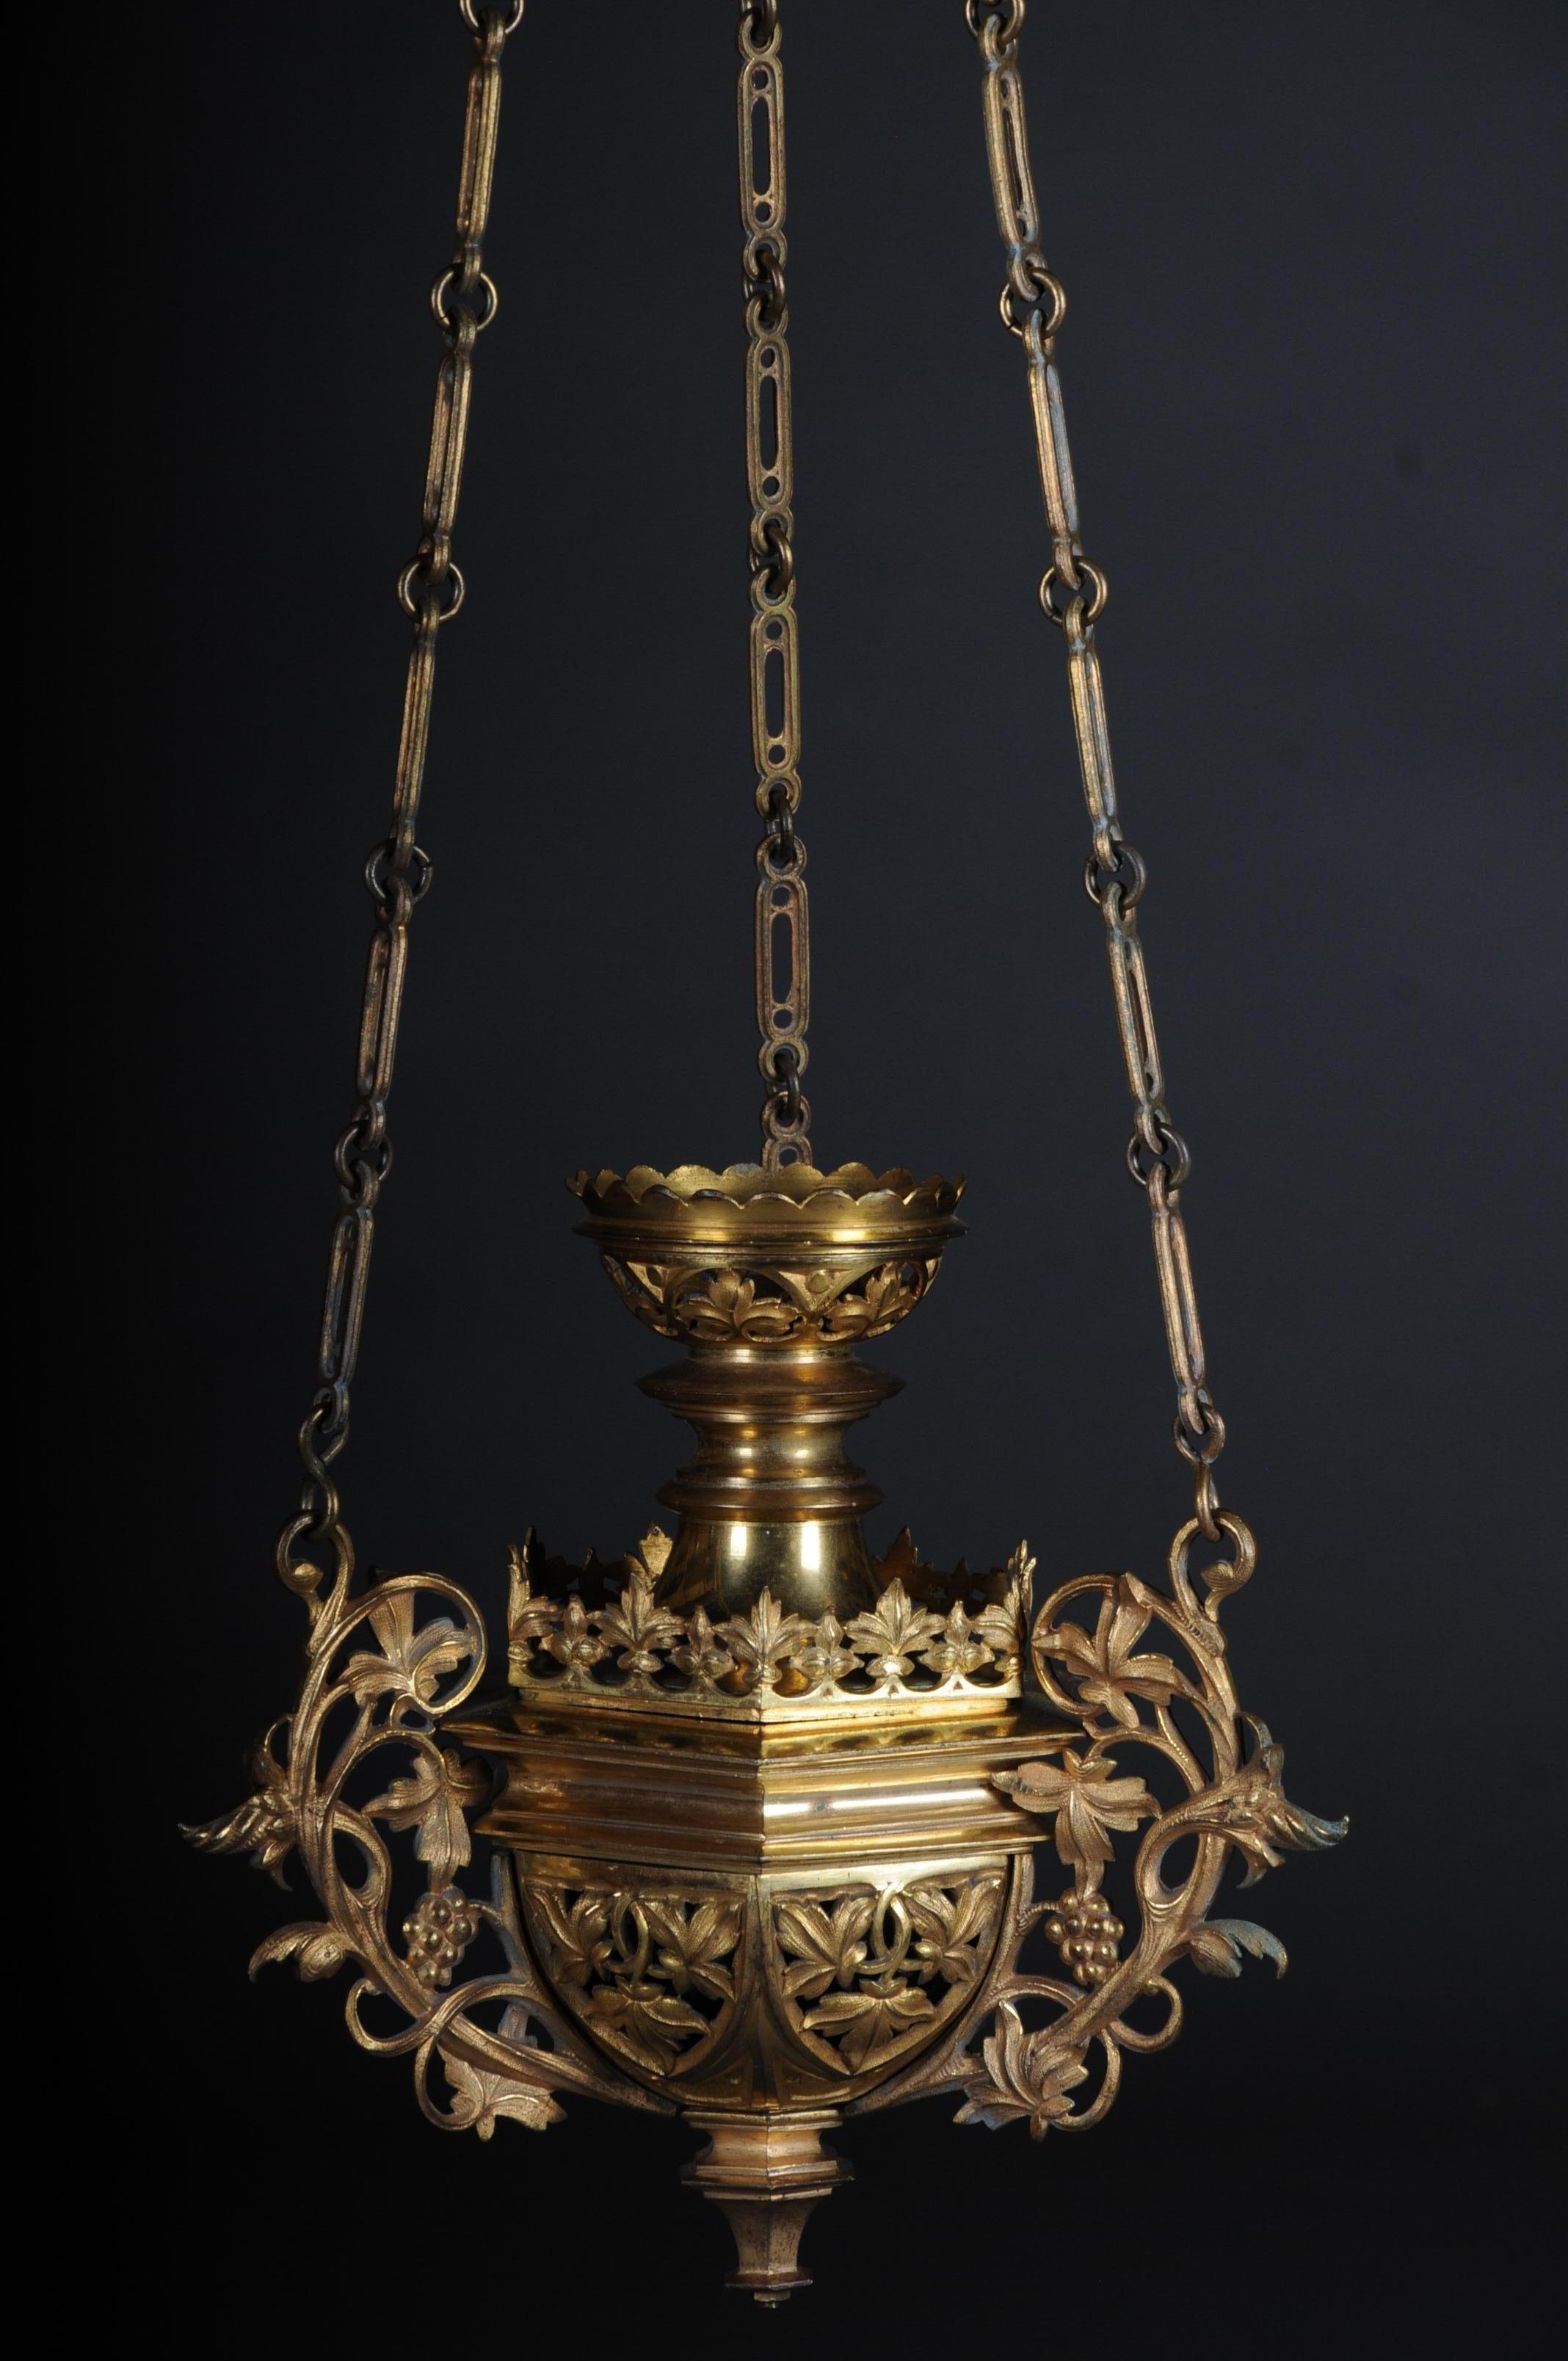 Sensationelle, kuriose Weihrauch-Ampel feuervergoldet, um 1850

Messing, vergoldet. Reichhaltiges florales Relief und teilweise durchbrochene Verzierungen. An einer dreiteiligen Kettenaufhängung mit einem Baldachin. Sehr hohe Qualität der